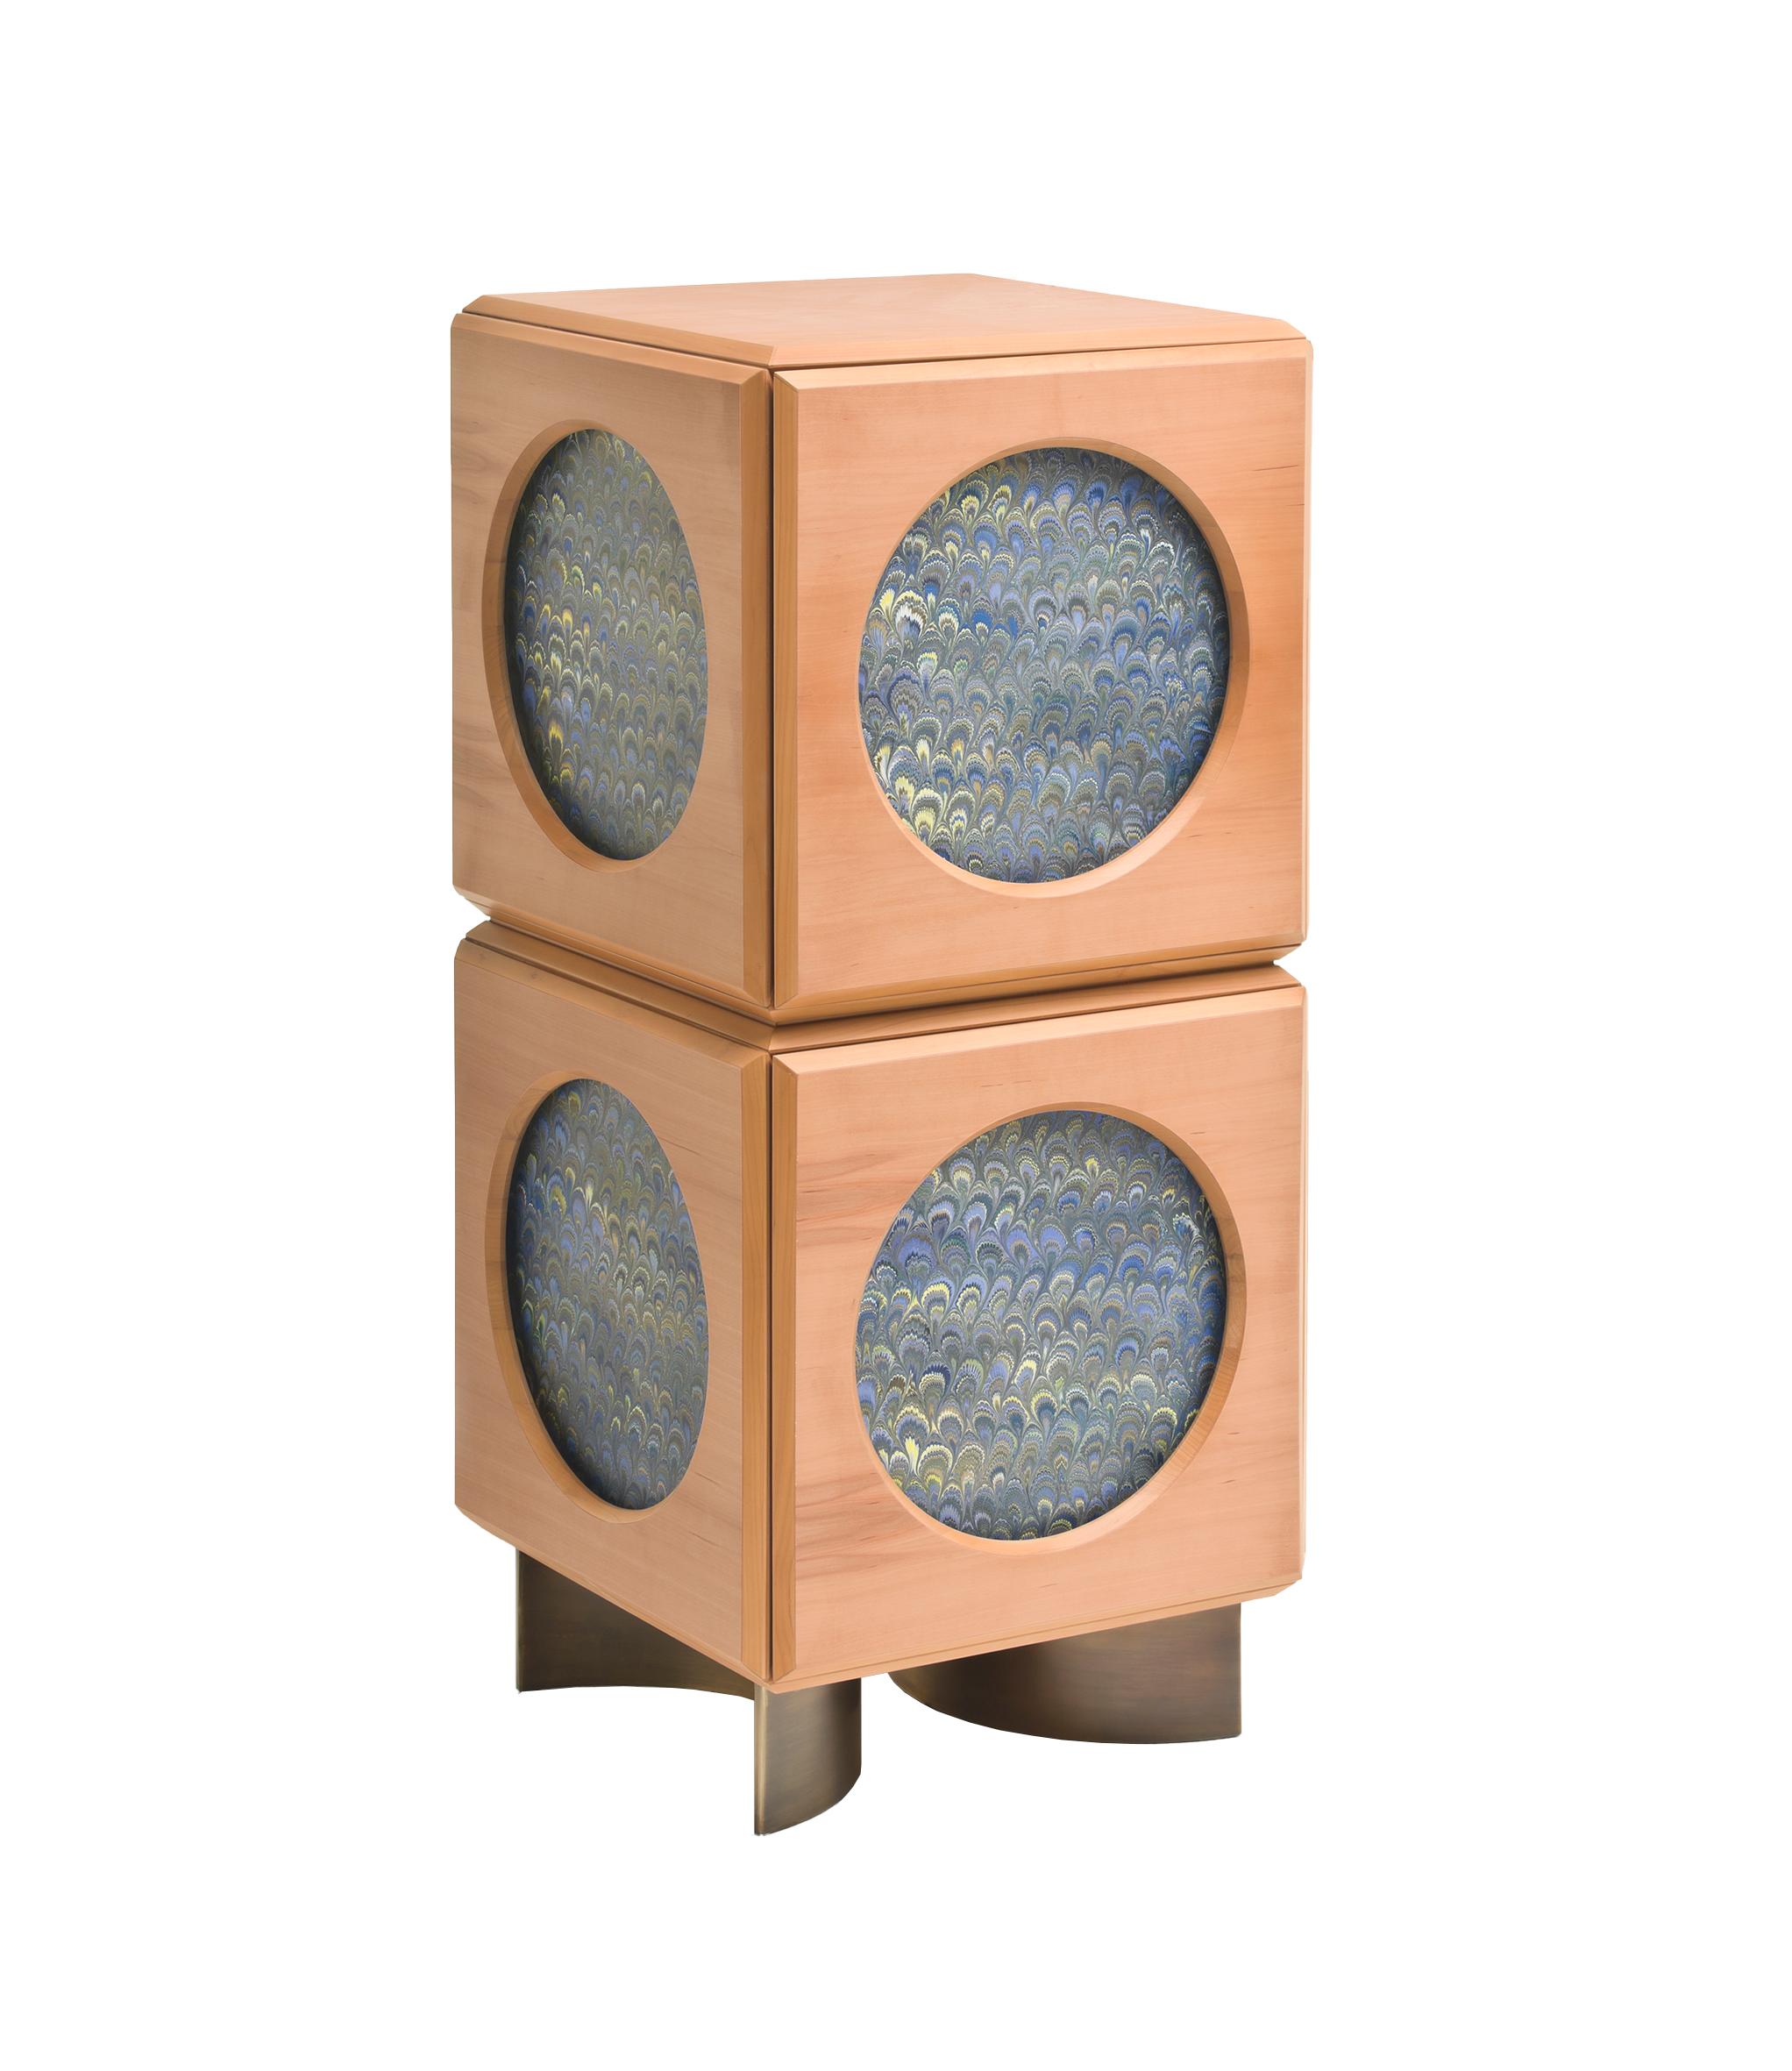 Oblù, entworfen von Analogia Project, ist ein geheimnisvoller Behälter, eine magische Kiste, die ihre Verwendung teilweise verbirgt und teilweise offenbart. Die elegante rechteckige Struktur aus Birnbaumholz, die von zwei Halbkreisen aus brüniertem